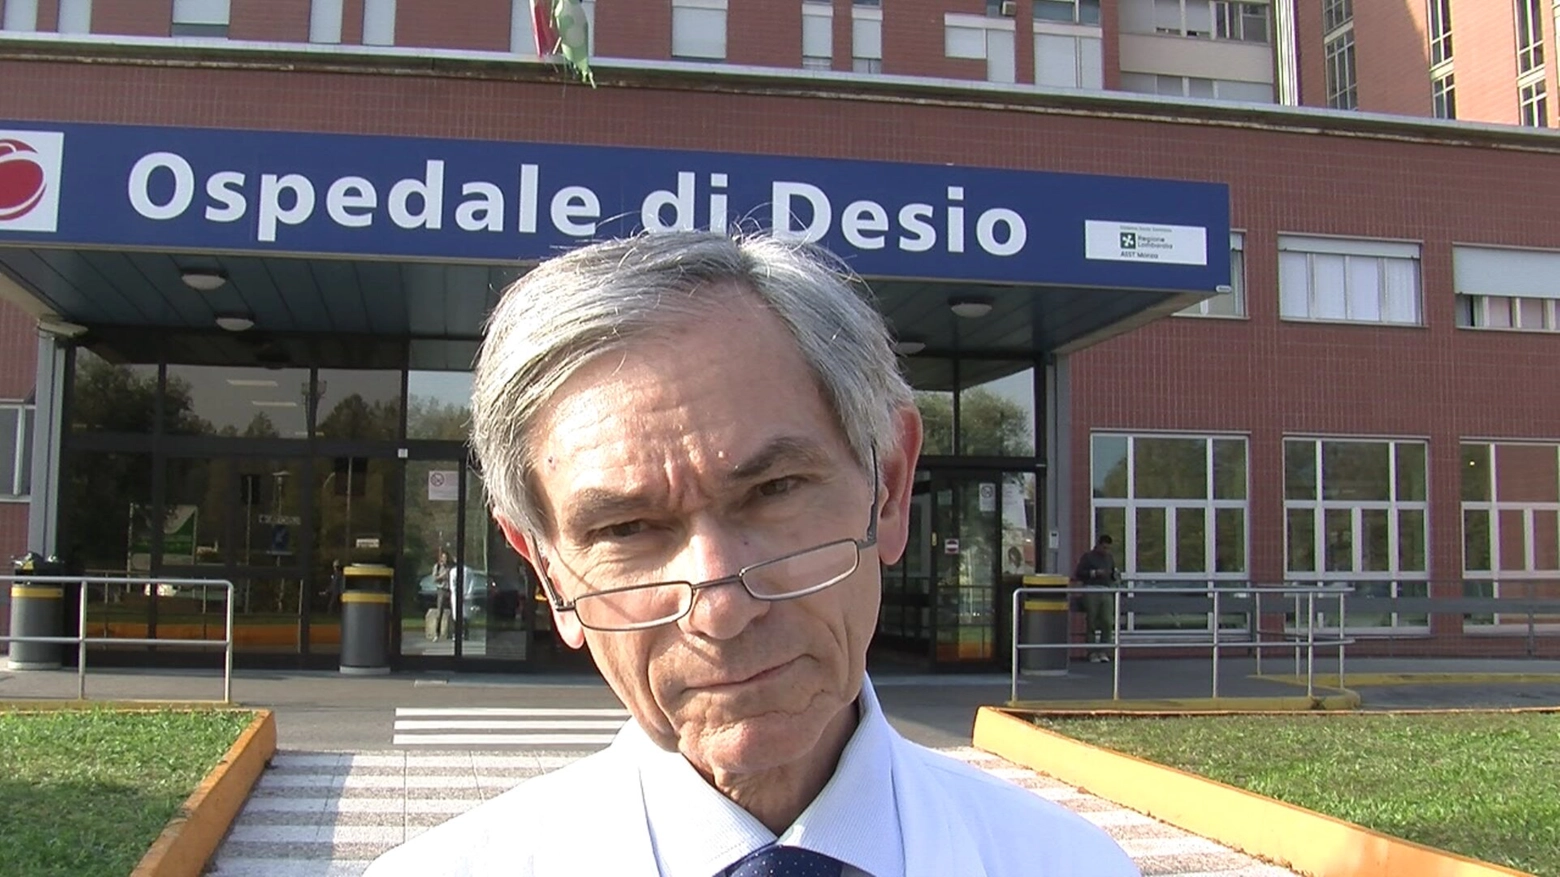 Vittorio Baldini, Direttore UOC Medicina Generale - Ospedale Desio